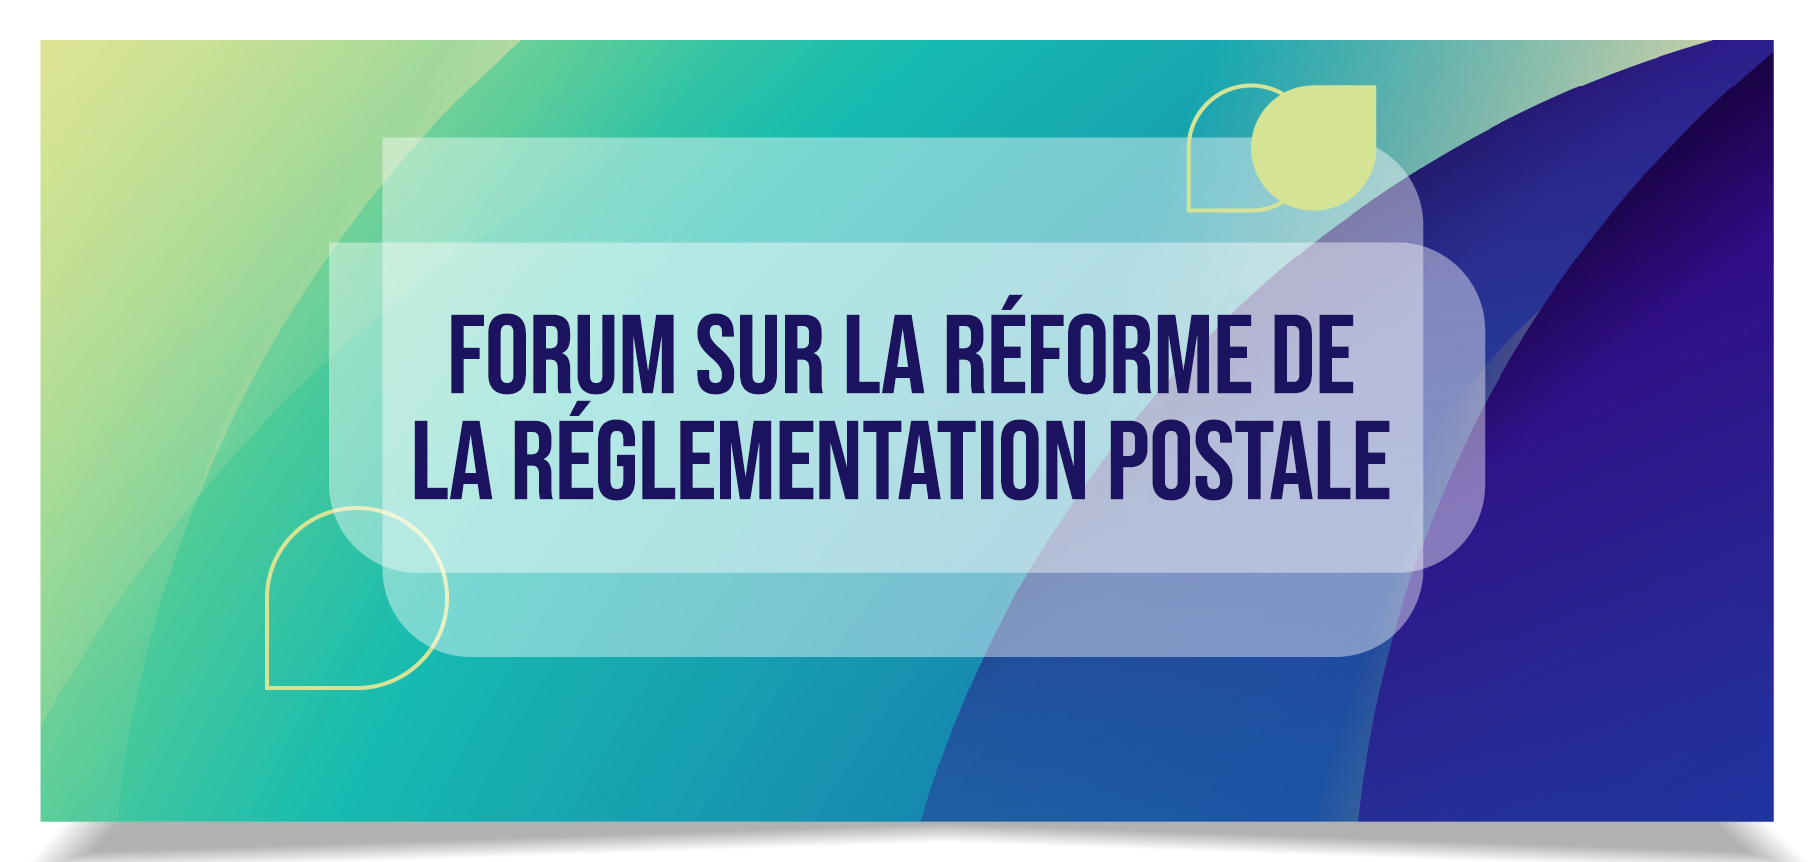 Forum sur la réforme de la réglementation postale